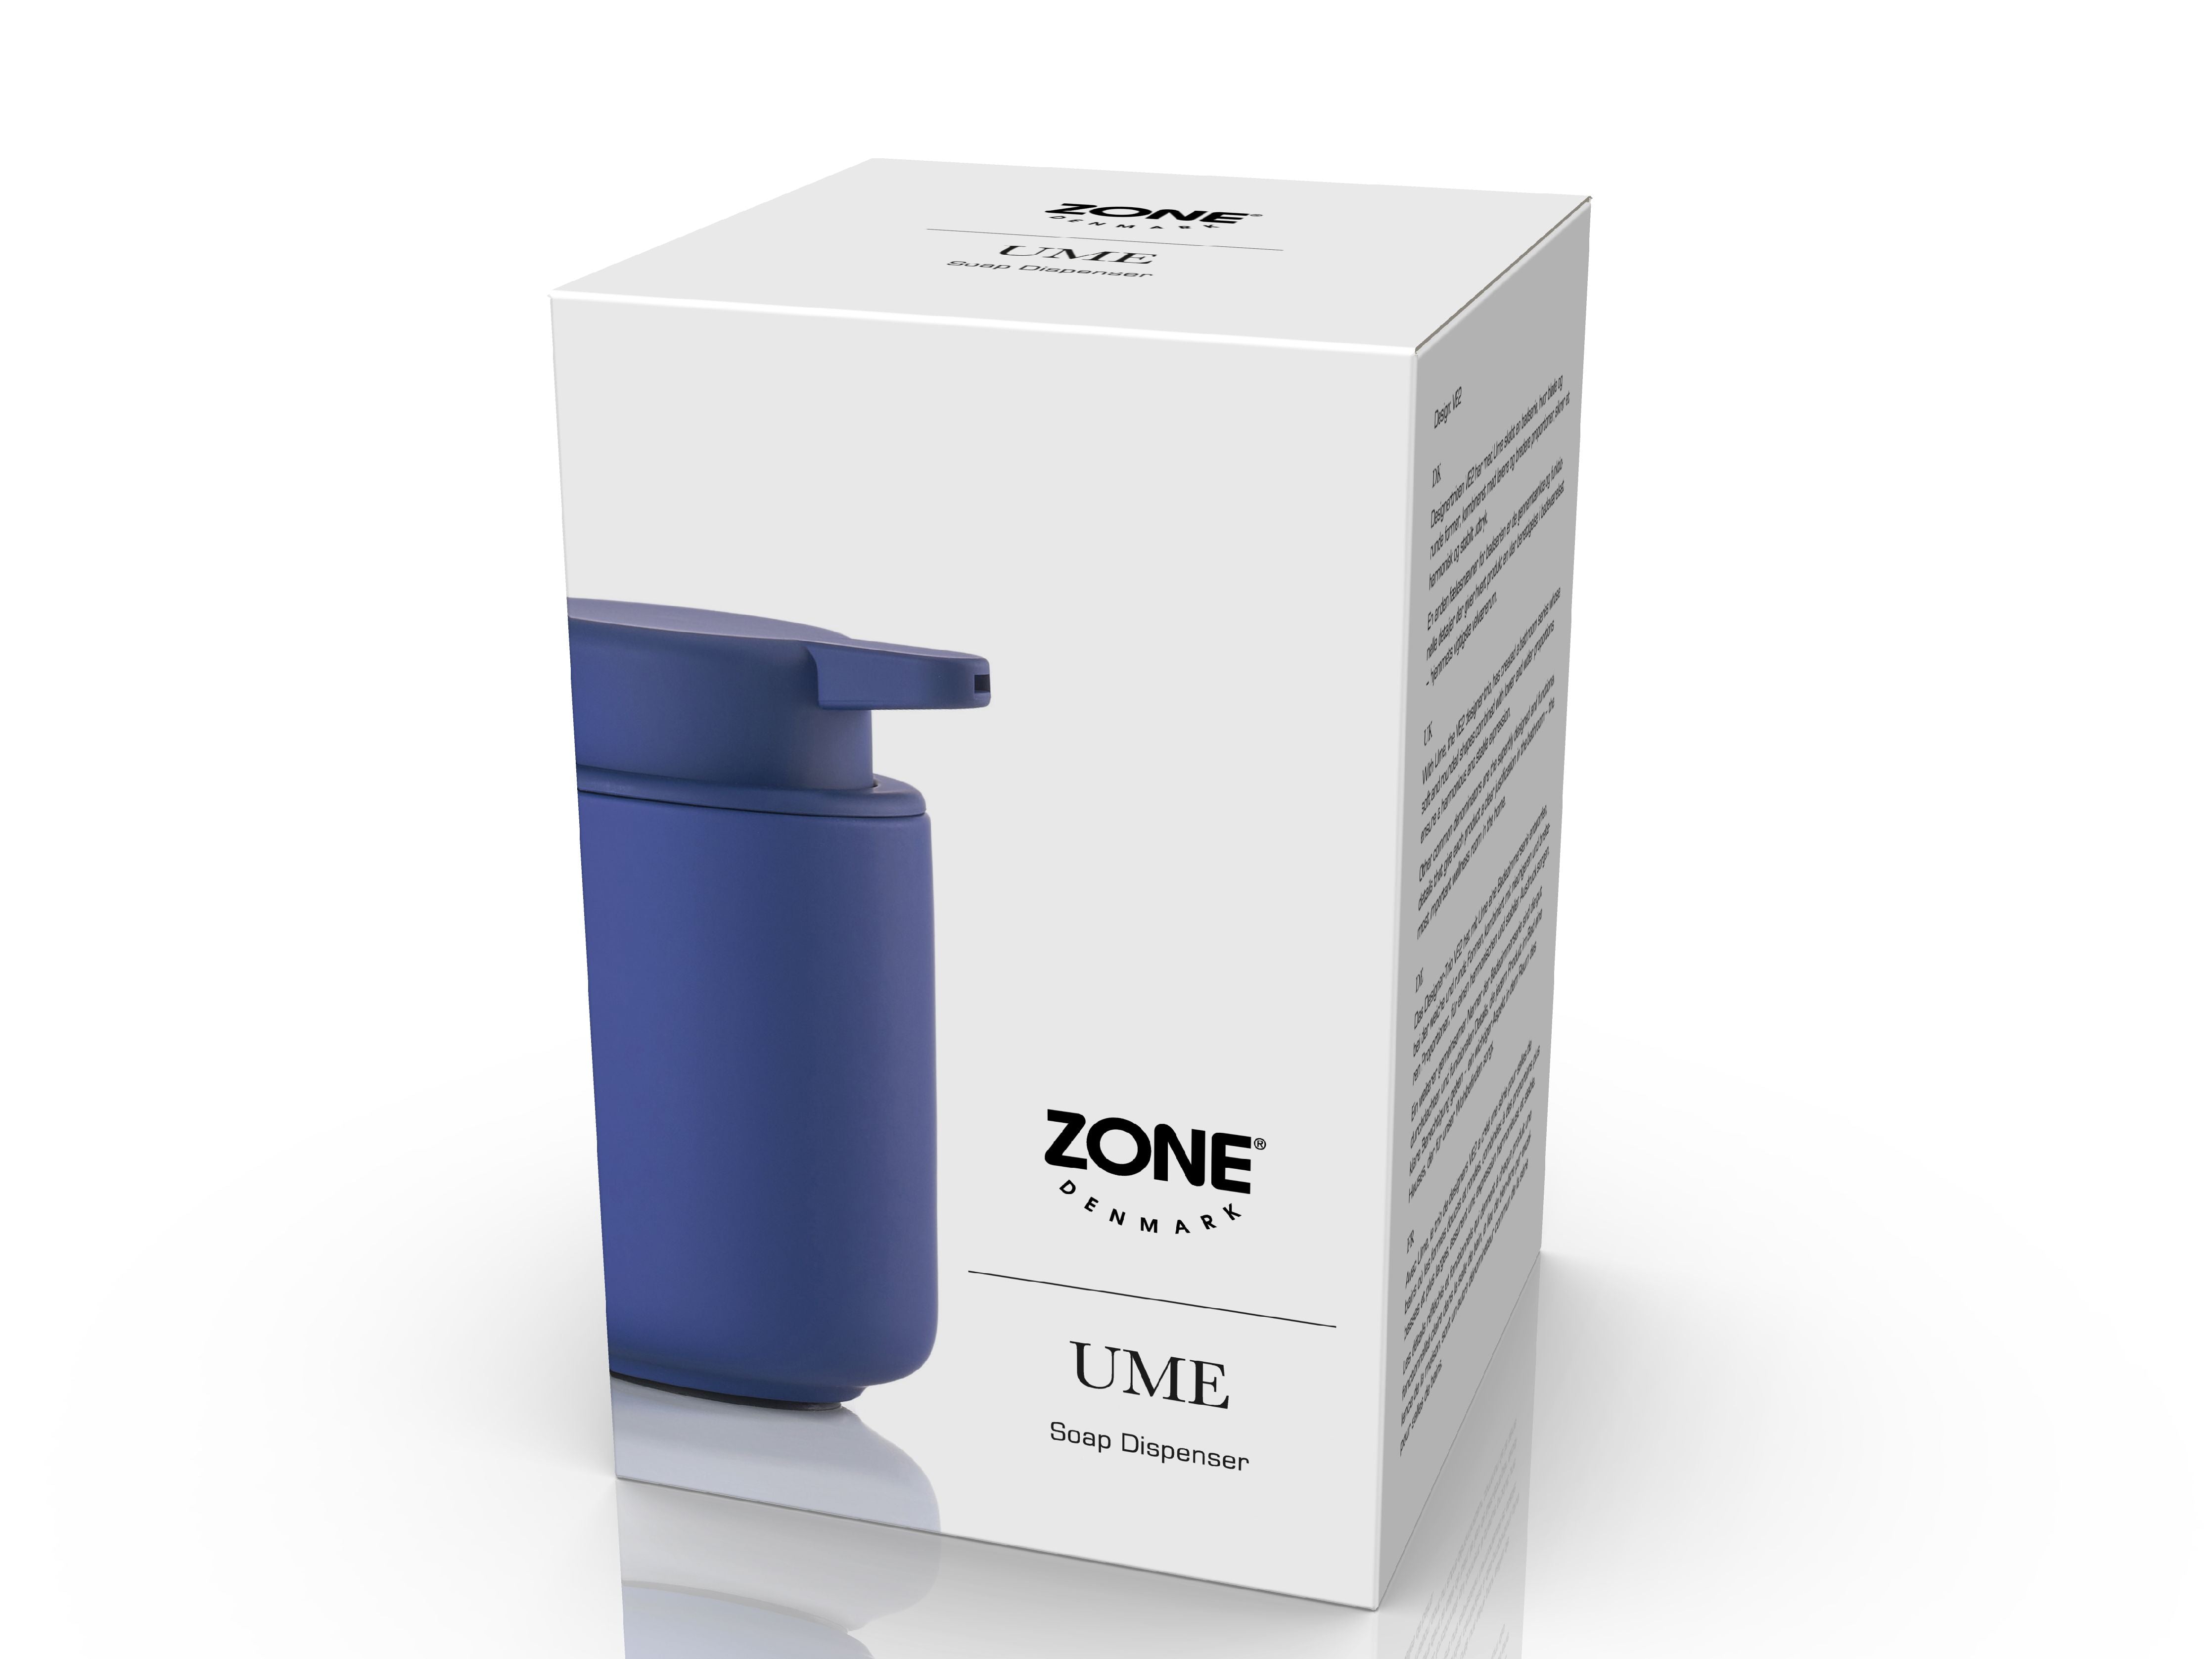 Zona Dinamarca UME SOAP dispenser 0.25 litros, índigo azul